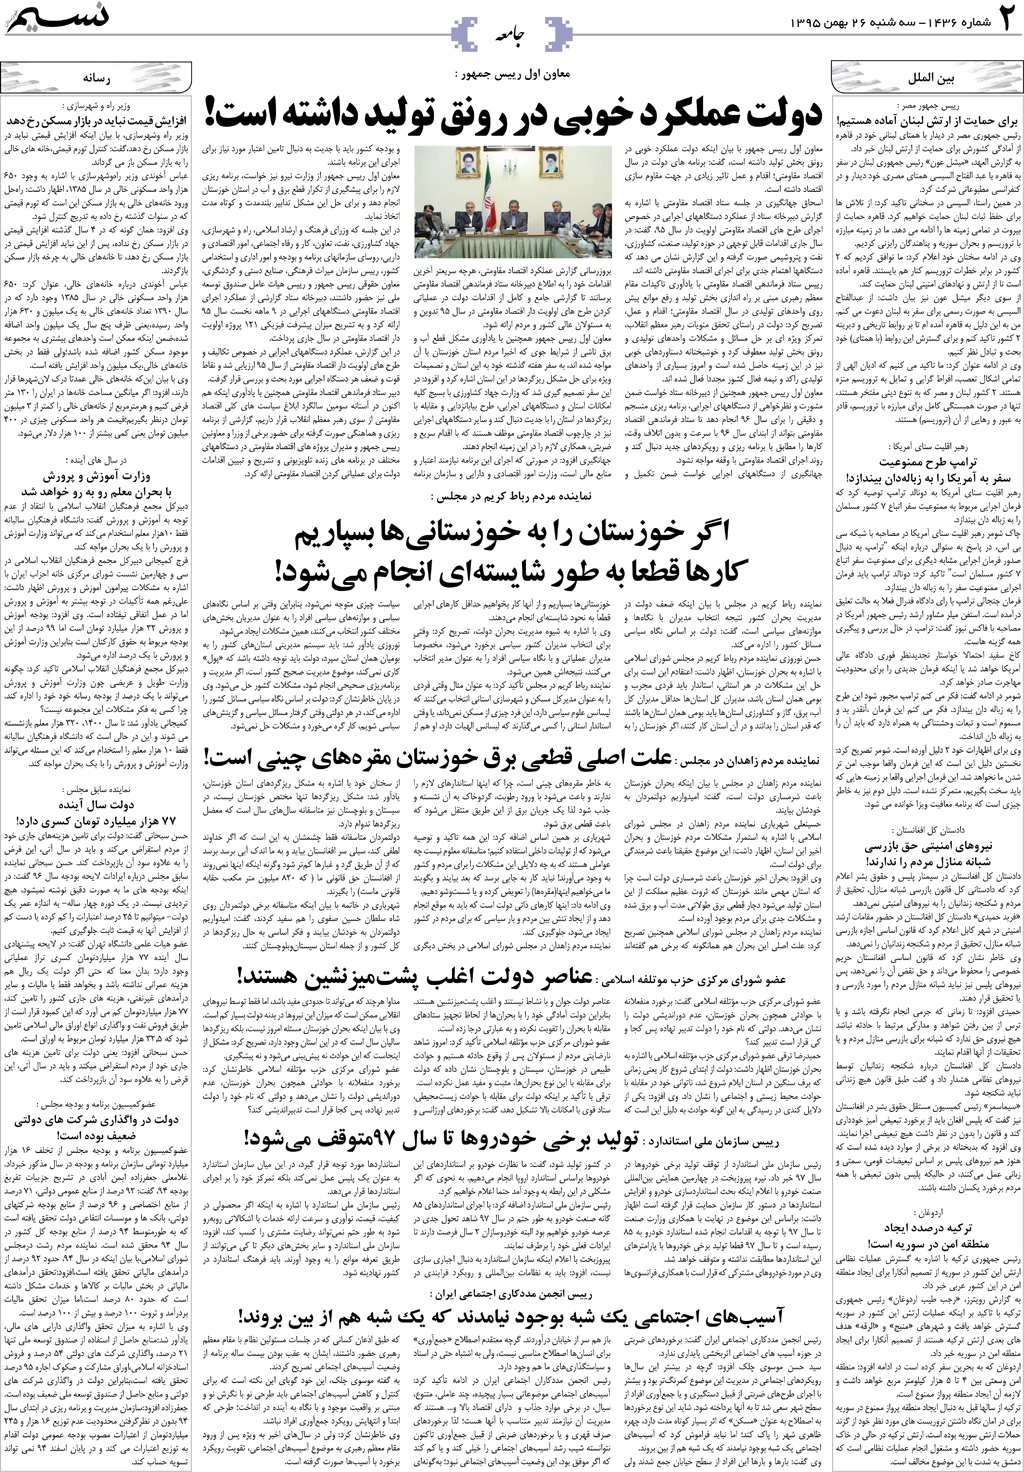 صفحه جامعه روزنامه نسیم شماره 1436